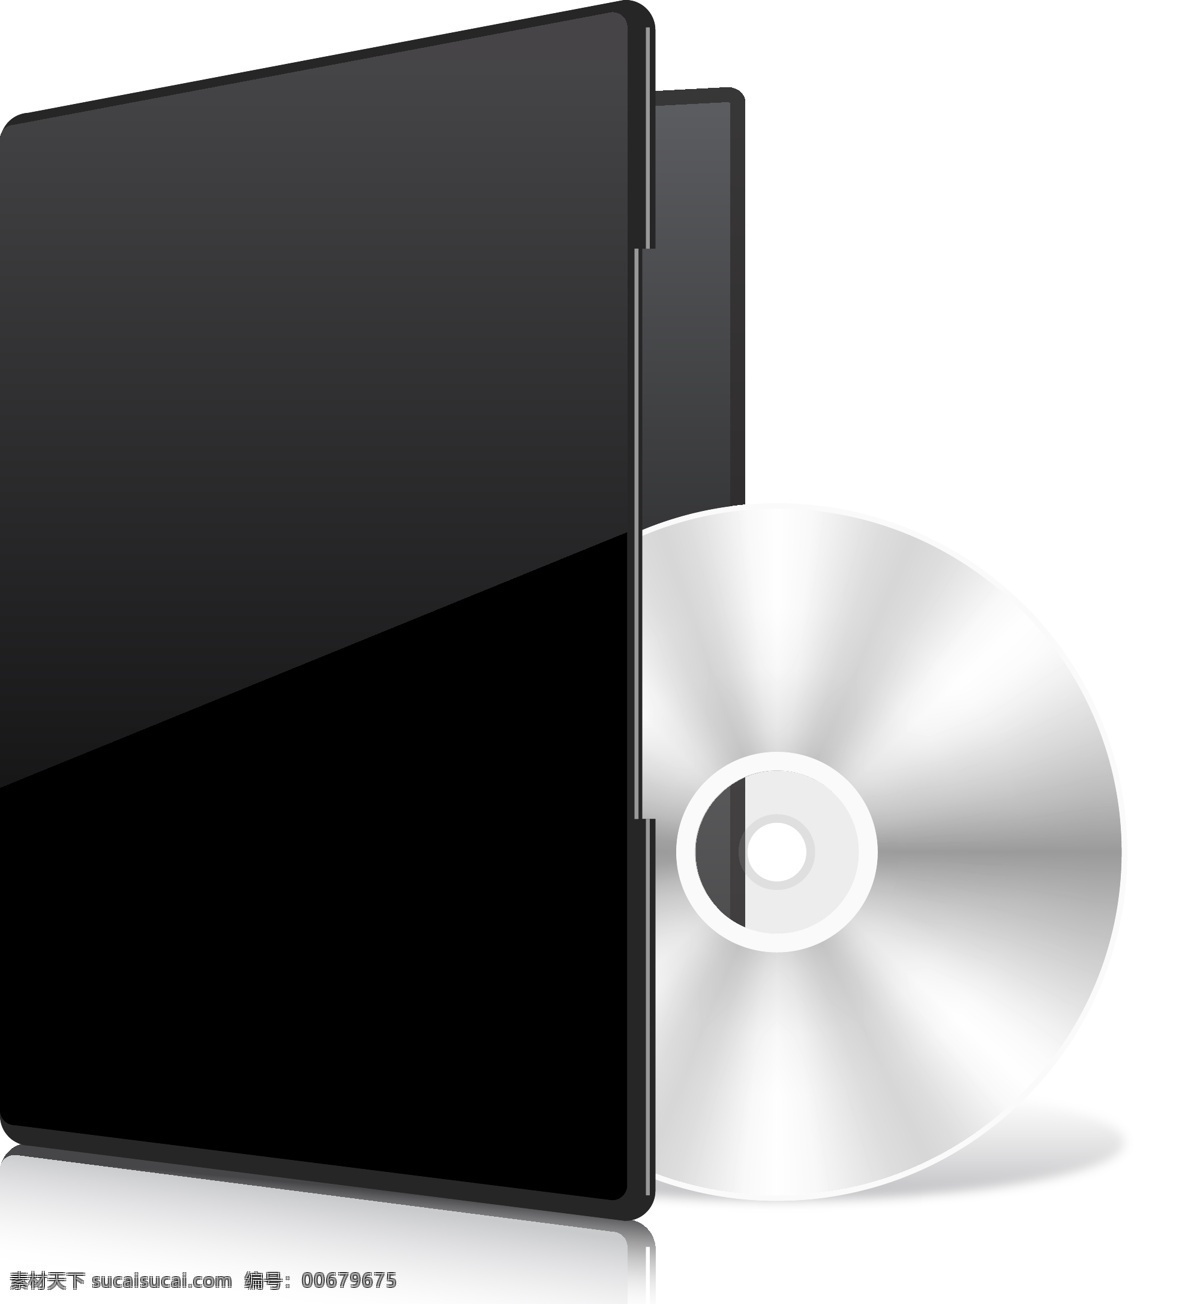 compacr 盘 模板 模型 封面 包装 cd dvd cd封面 材料 光盘 晕 一片空白 嘲笑 白色